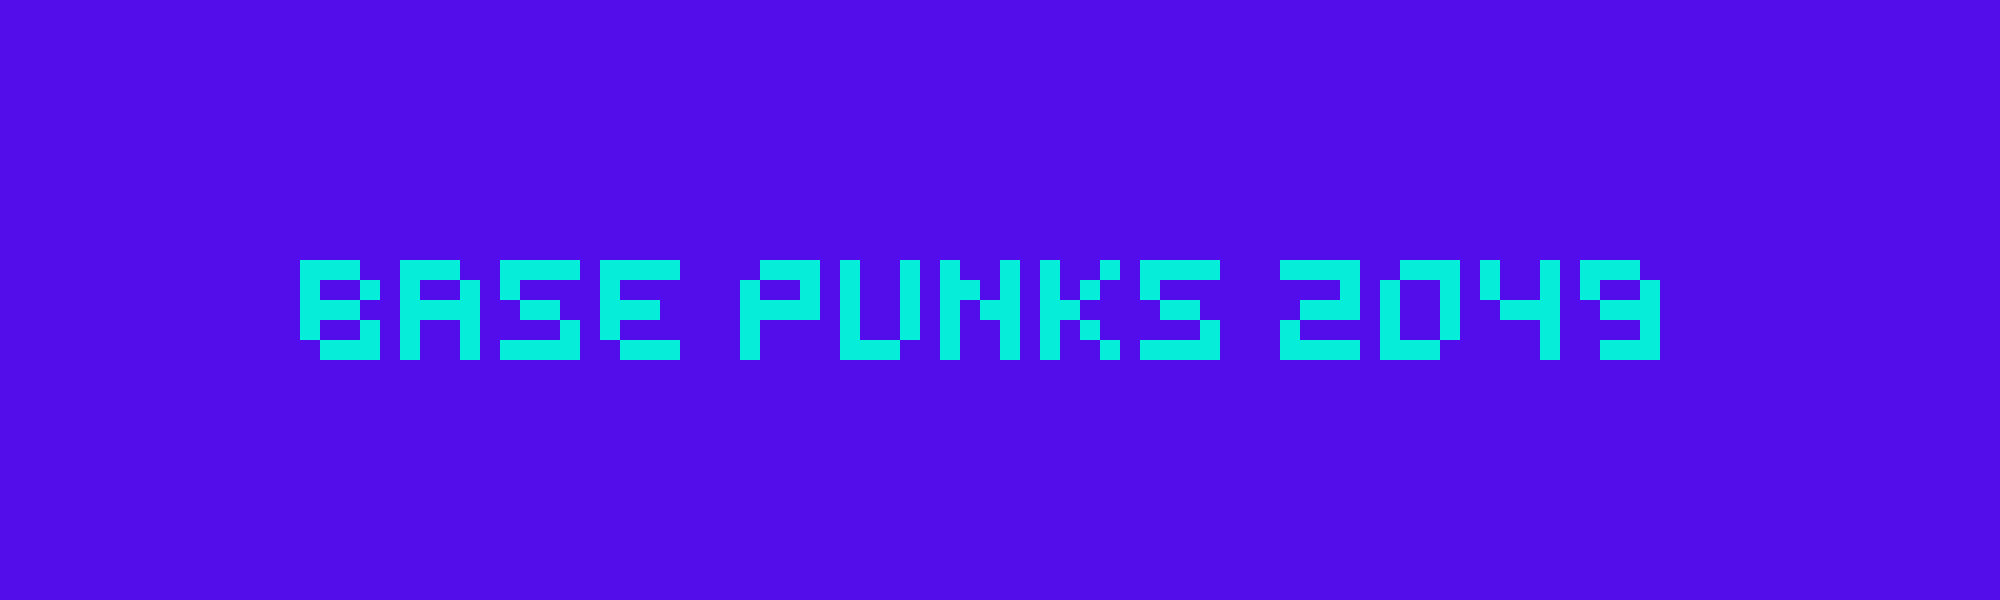 Base Punks 2049